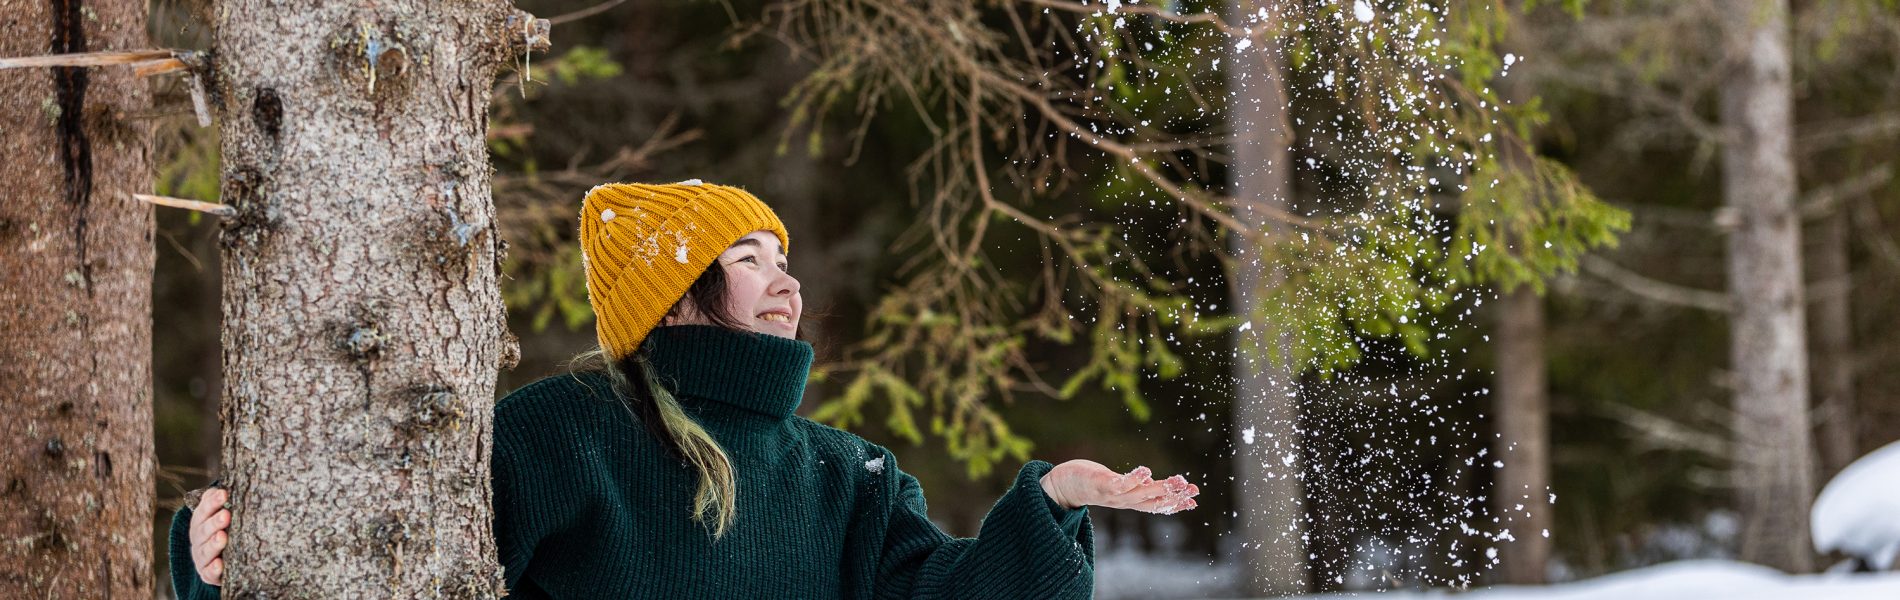 Nainen heittää lunta ilmaan puun takaa - Lasten ja nuorten joulurauhan julistus.